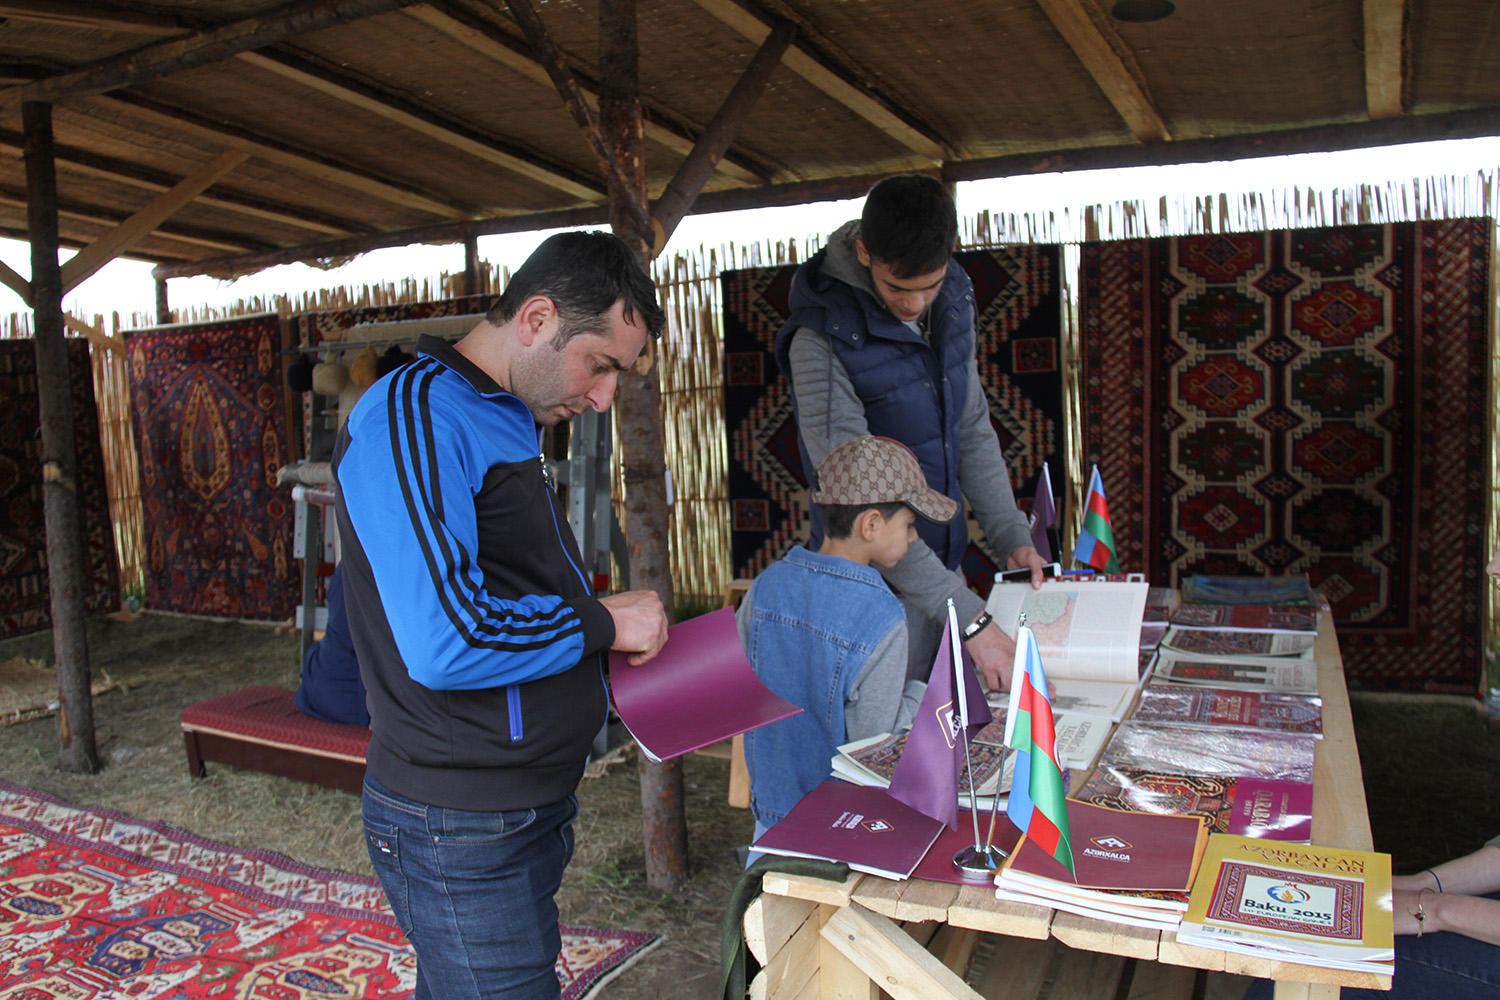 Milli Yaylaq Festivalında “Azərxalça”nın məhsullarına böyük maraq göstərilib (FOTO) - Gallery Image